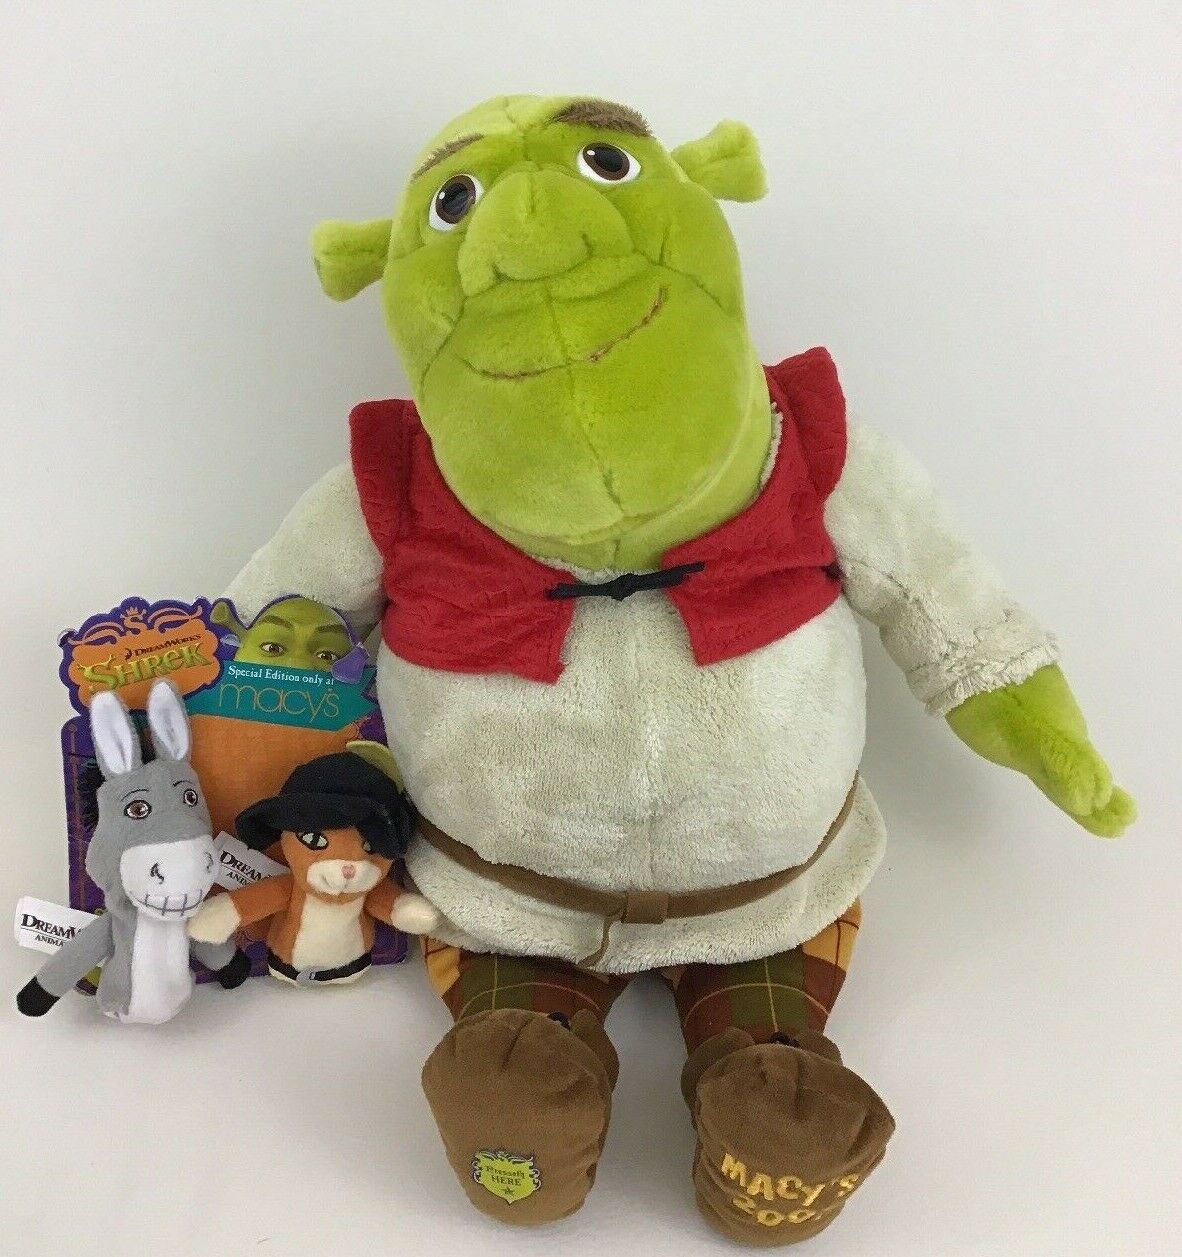 Shrek plush toys